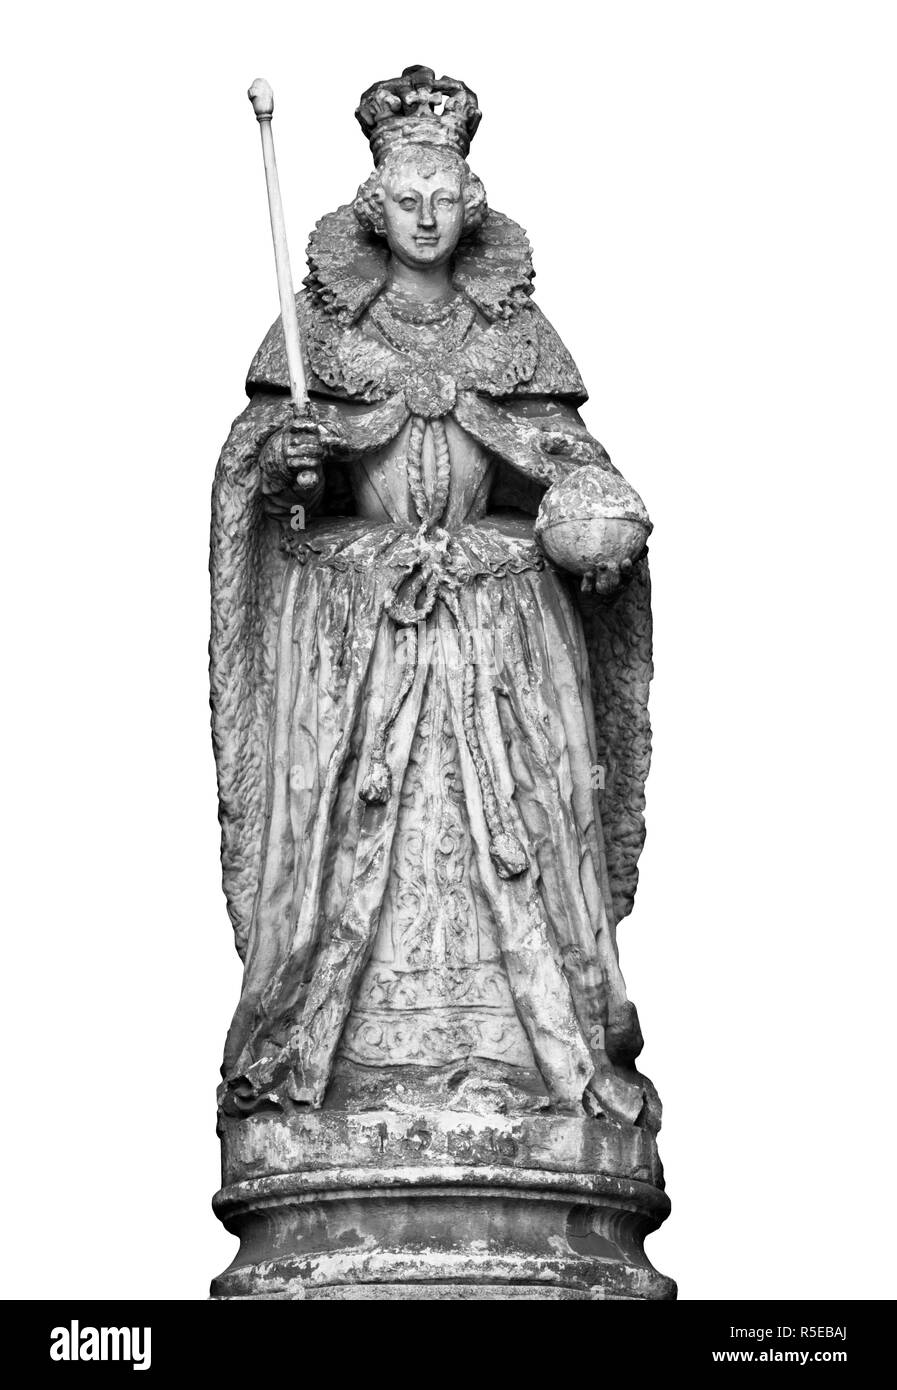 La statue de la reine Elizabeth 1ère est au-dessus de la sacristie porte de l'église de In-The-St-Dunstans-Ouest dans Fleet Street, Londres, Angleterre Banque D'Images